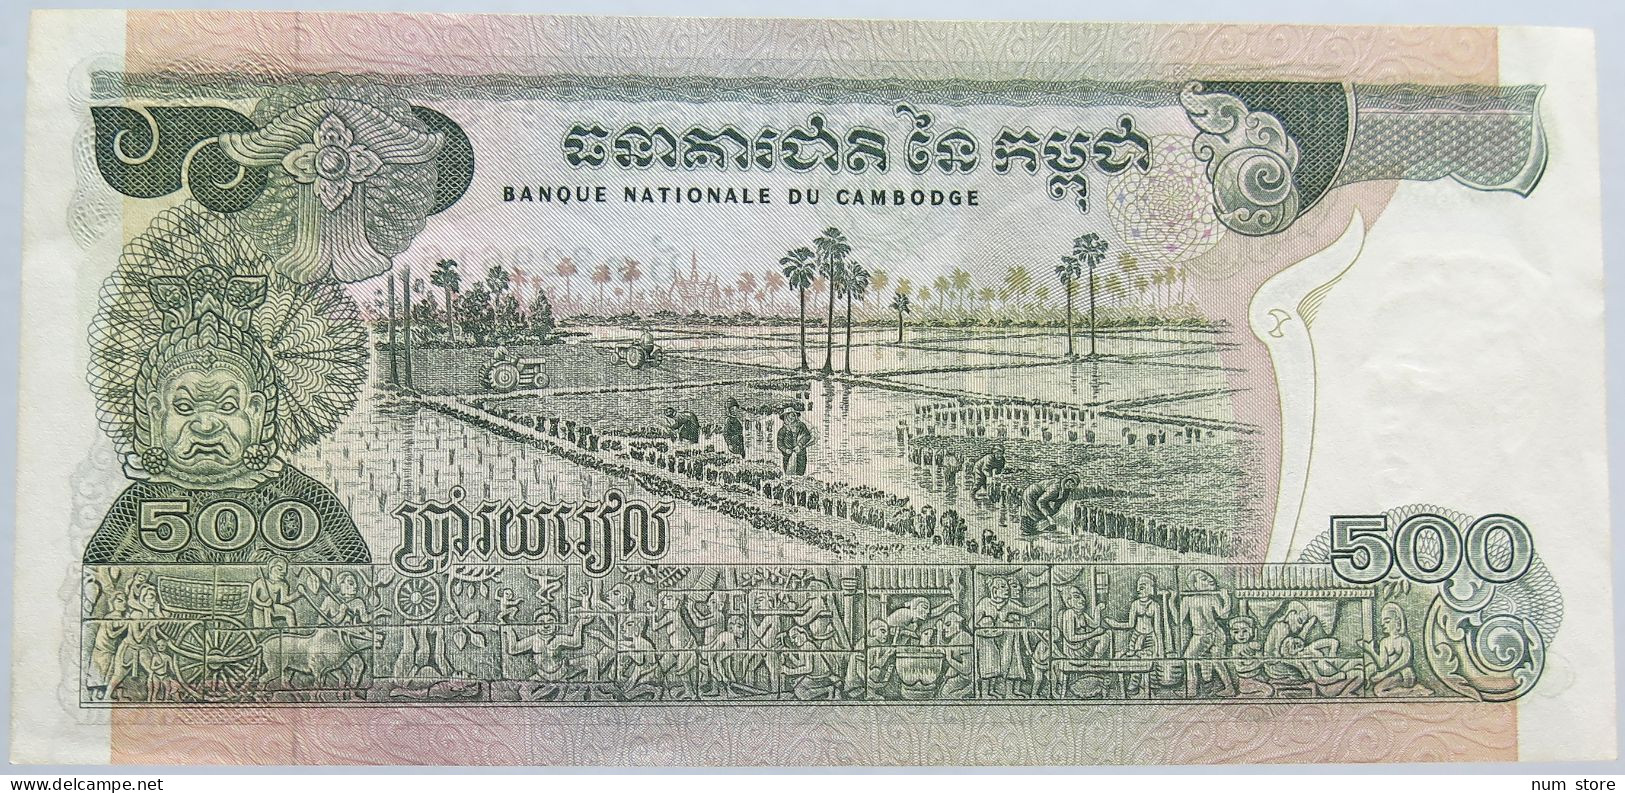 CAMBODIA 500 REILS 1973 CAMBODGE #alb003 0007 - Cambodge